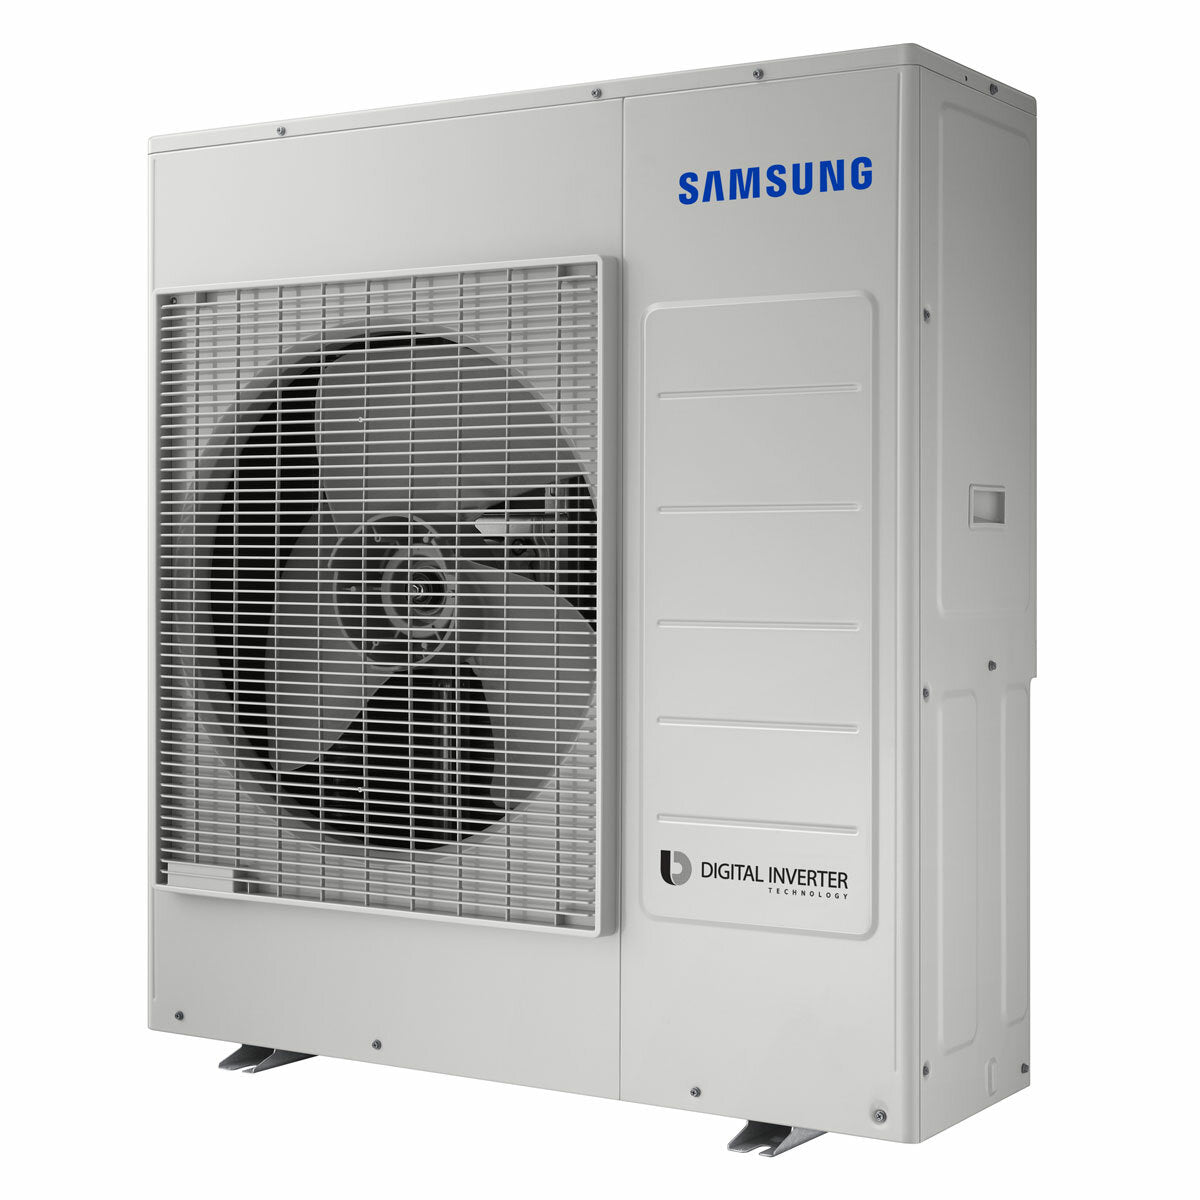 Samsung WindFree AVANT Trial Split Klimaanlage 18000 + 18000 + 18000 BTU Inverter A++ WLAN Außengerät 10,0 kW